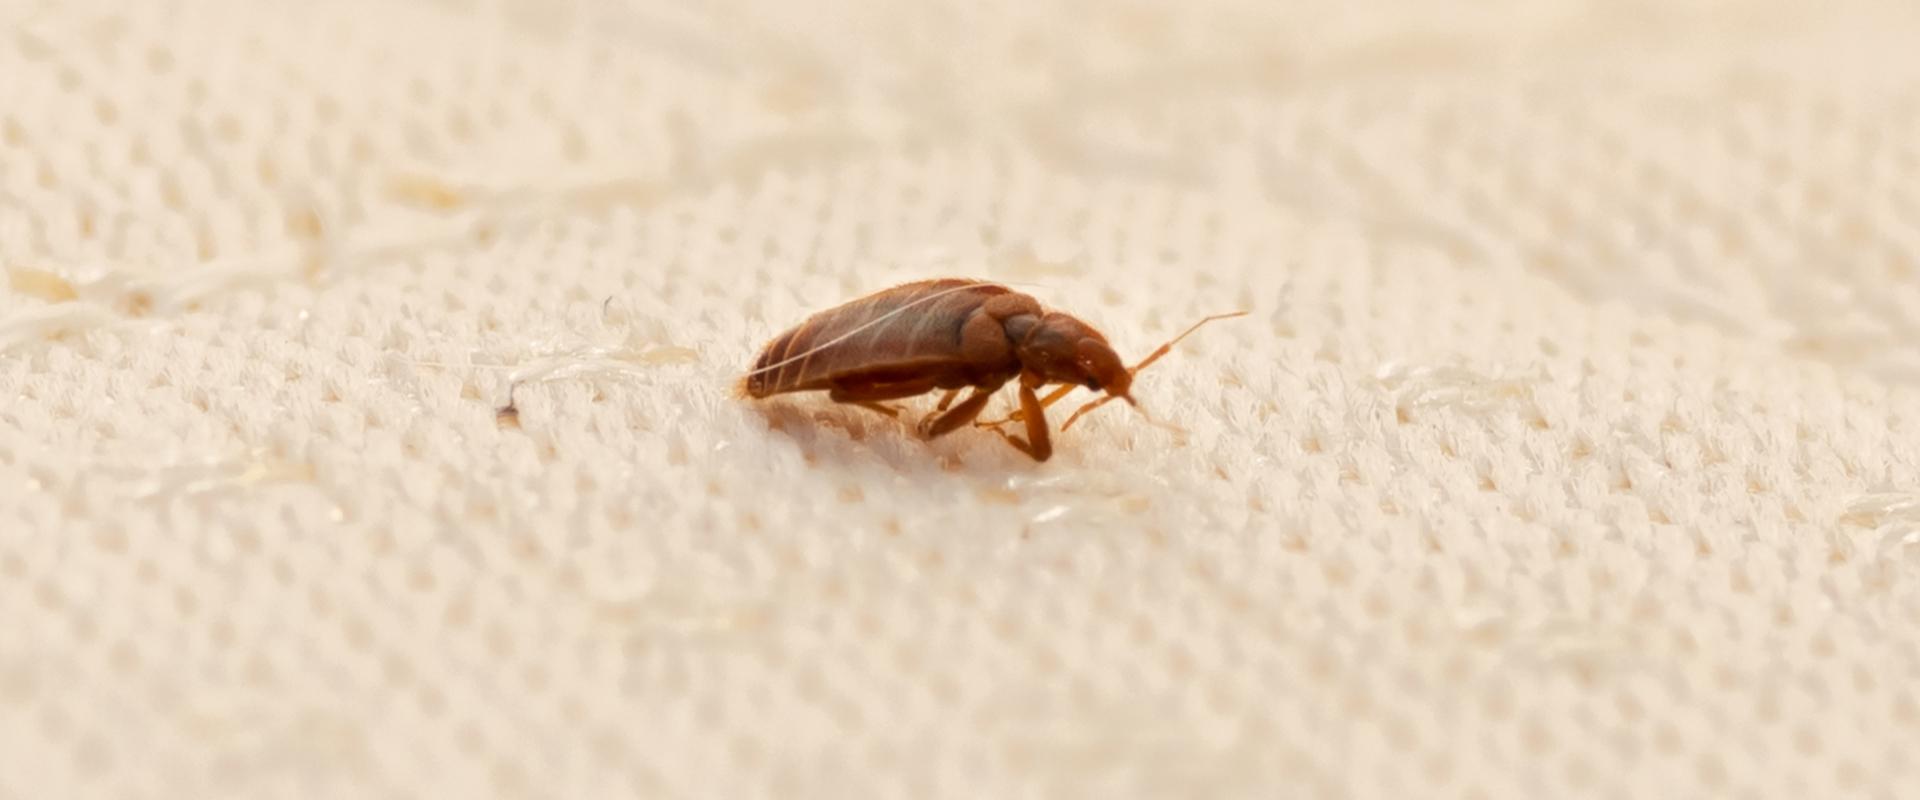 a bedbug on a mattress